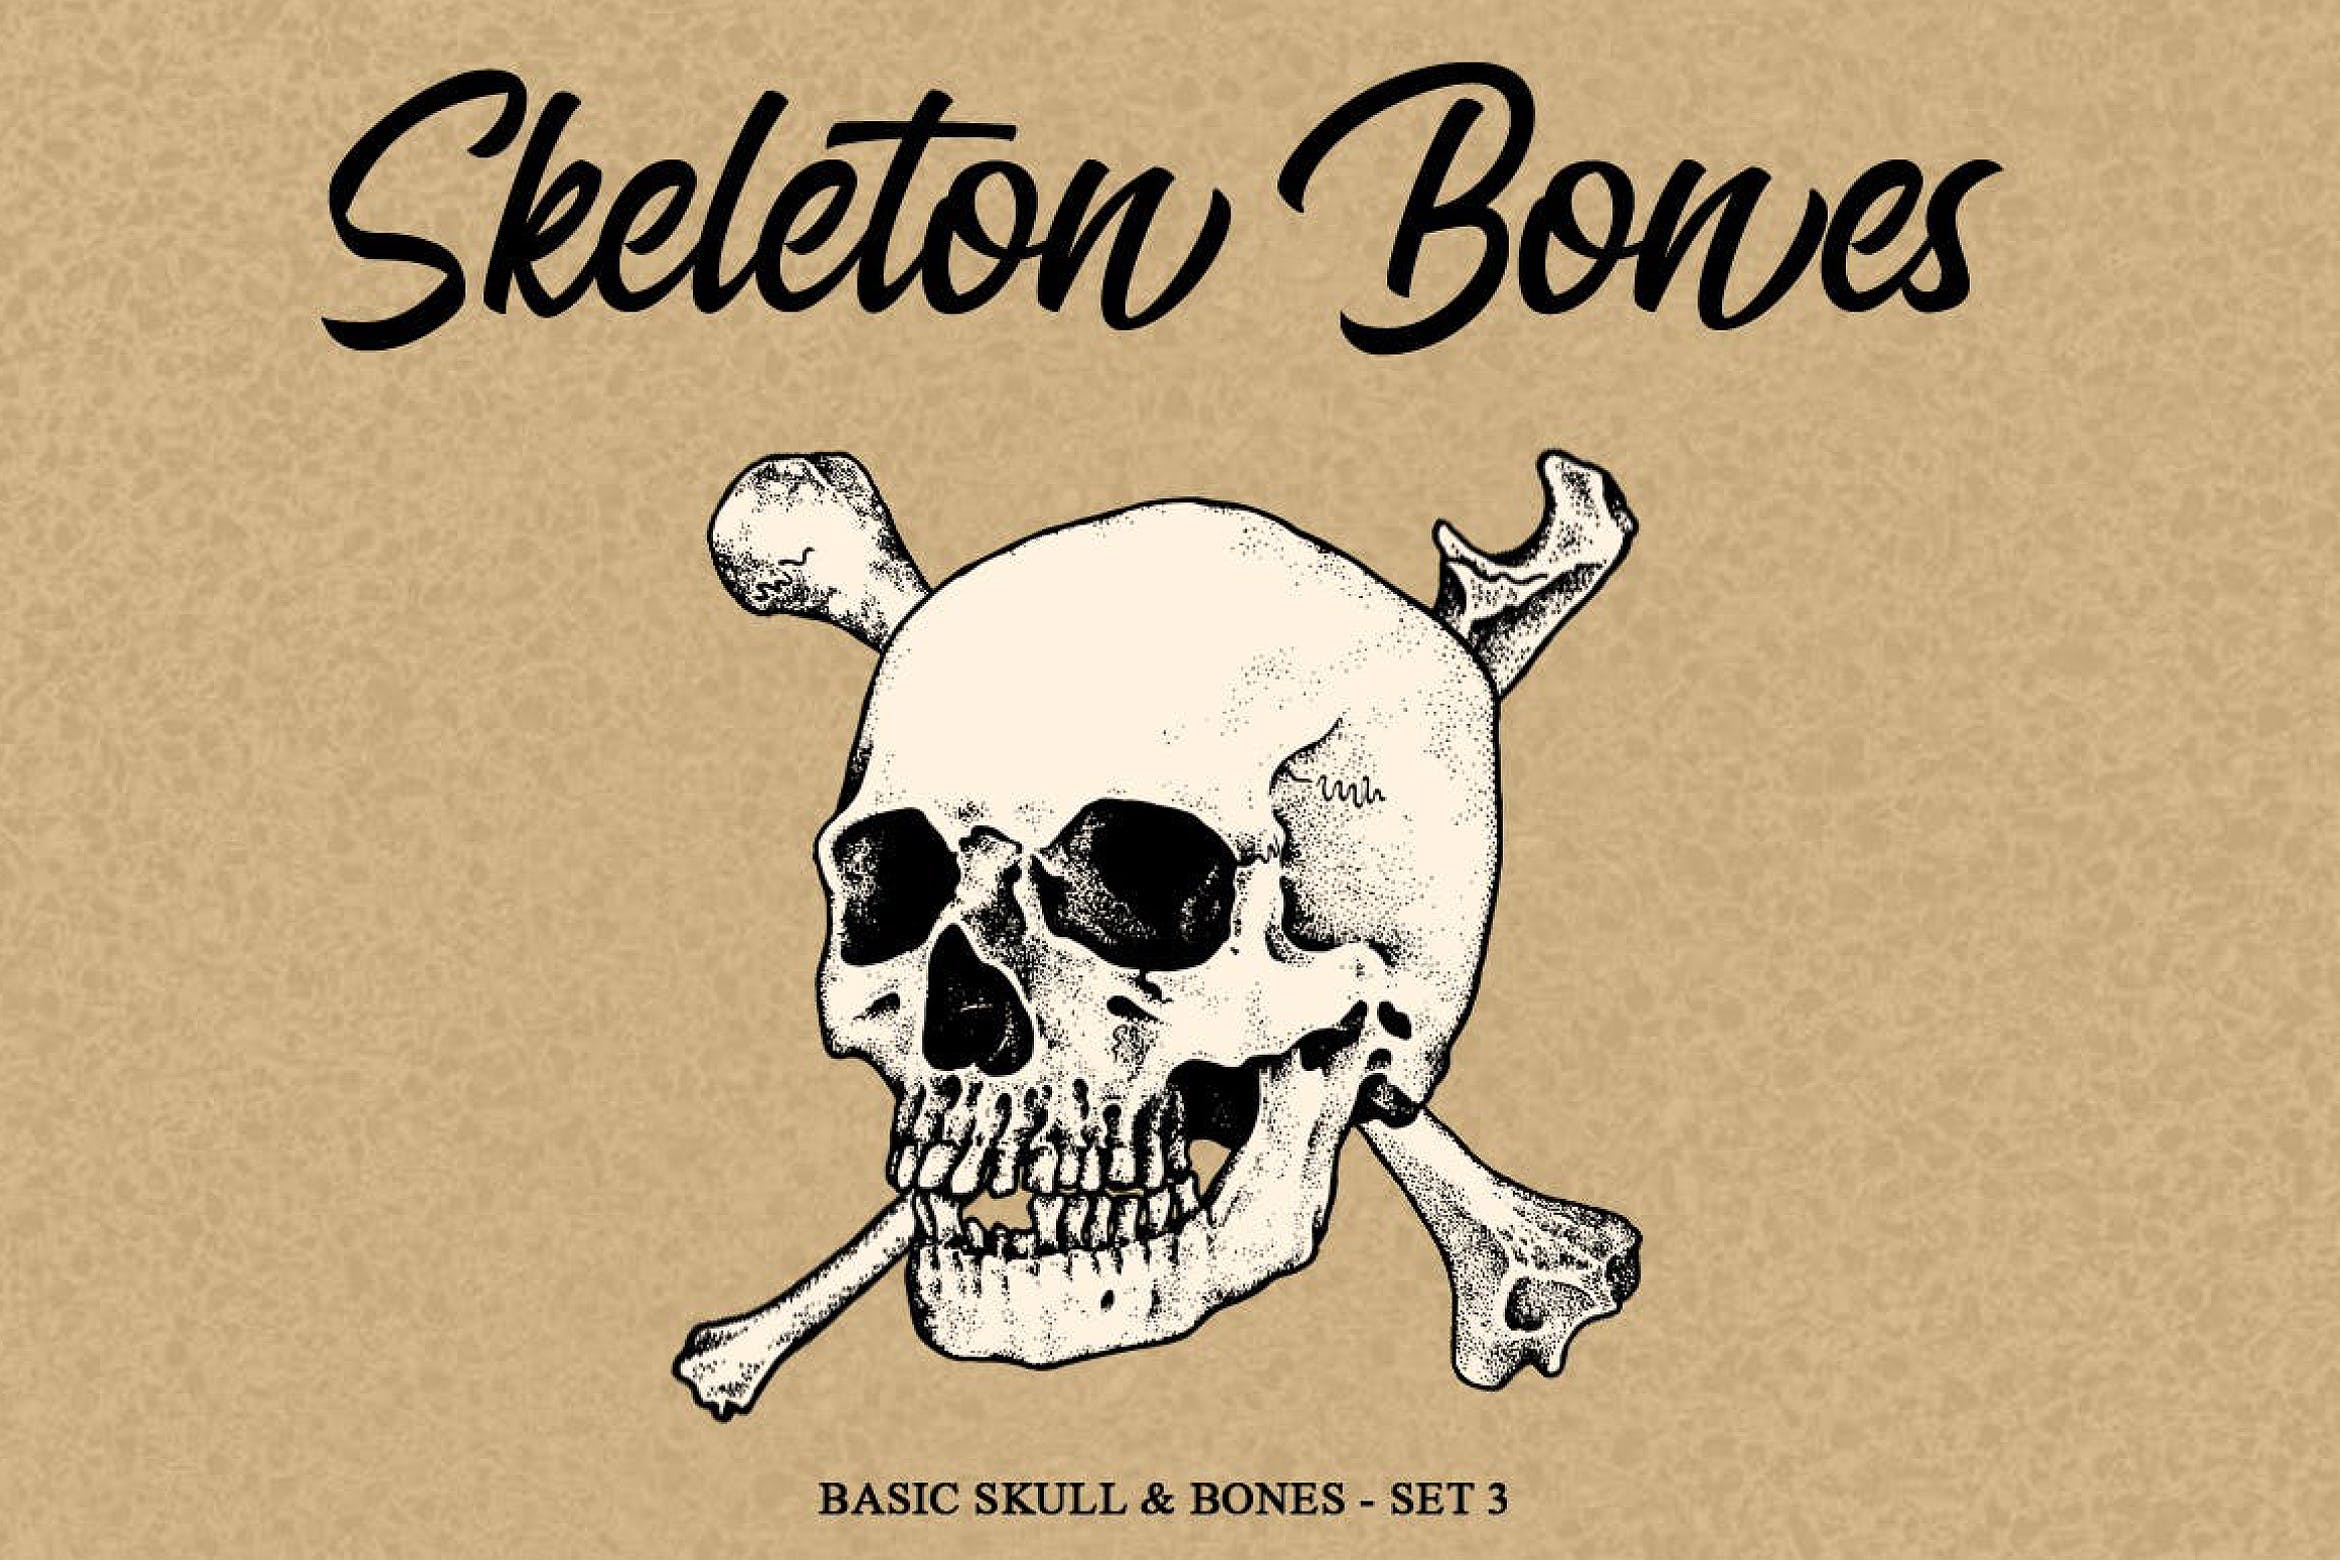 骨骼头骨骷髅矢量手绘插画v3 Skeleton bones set 3插图